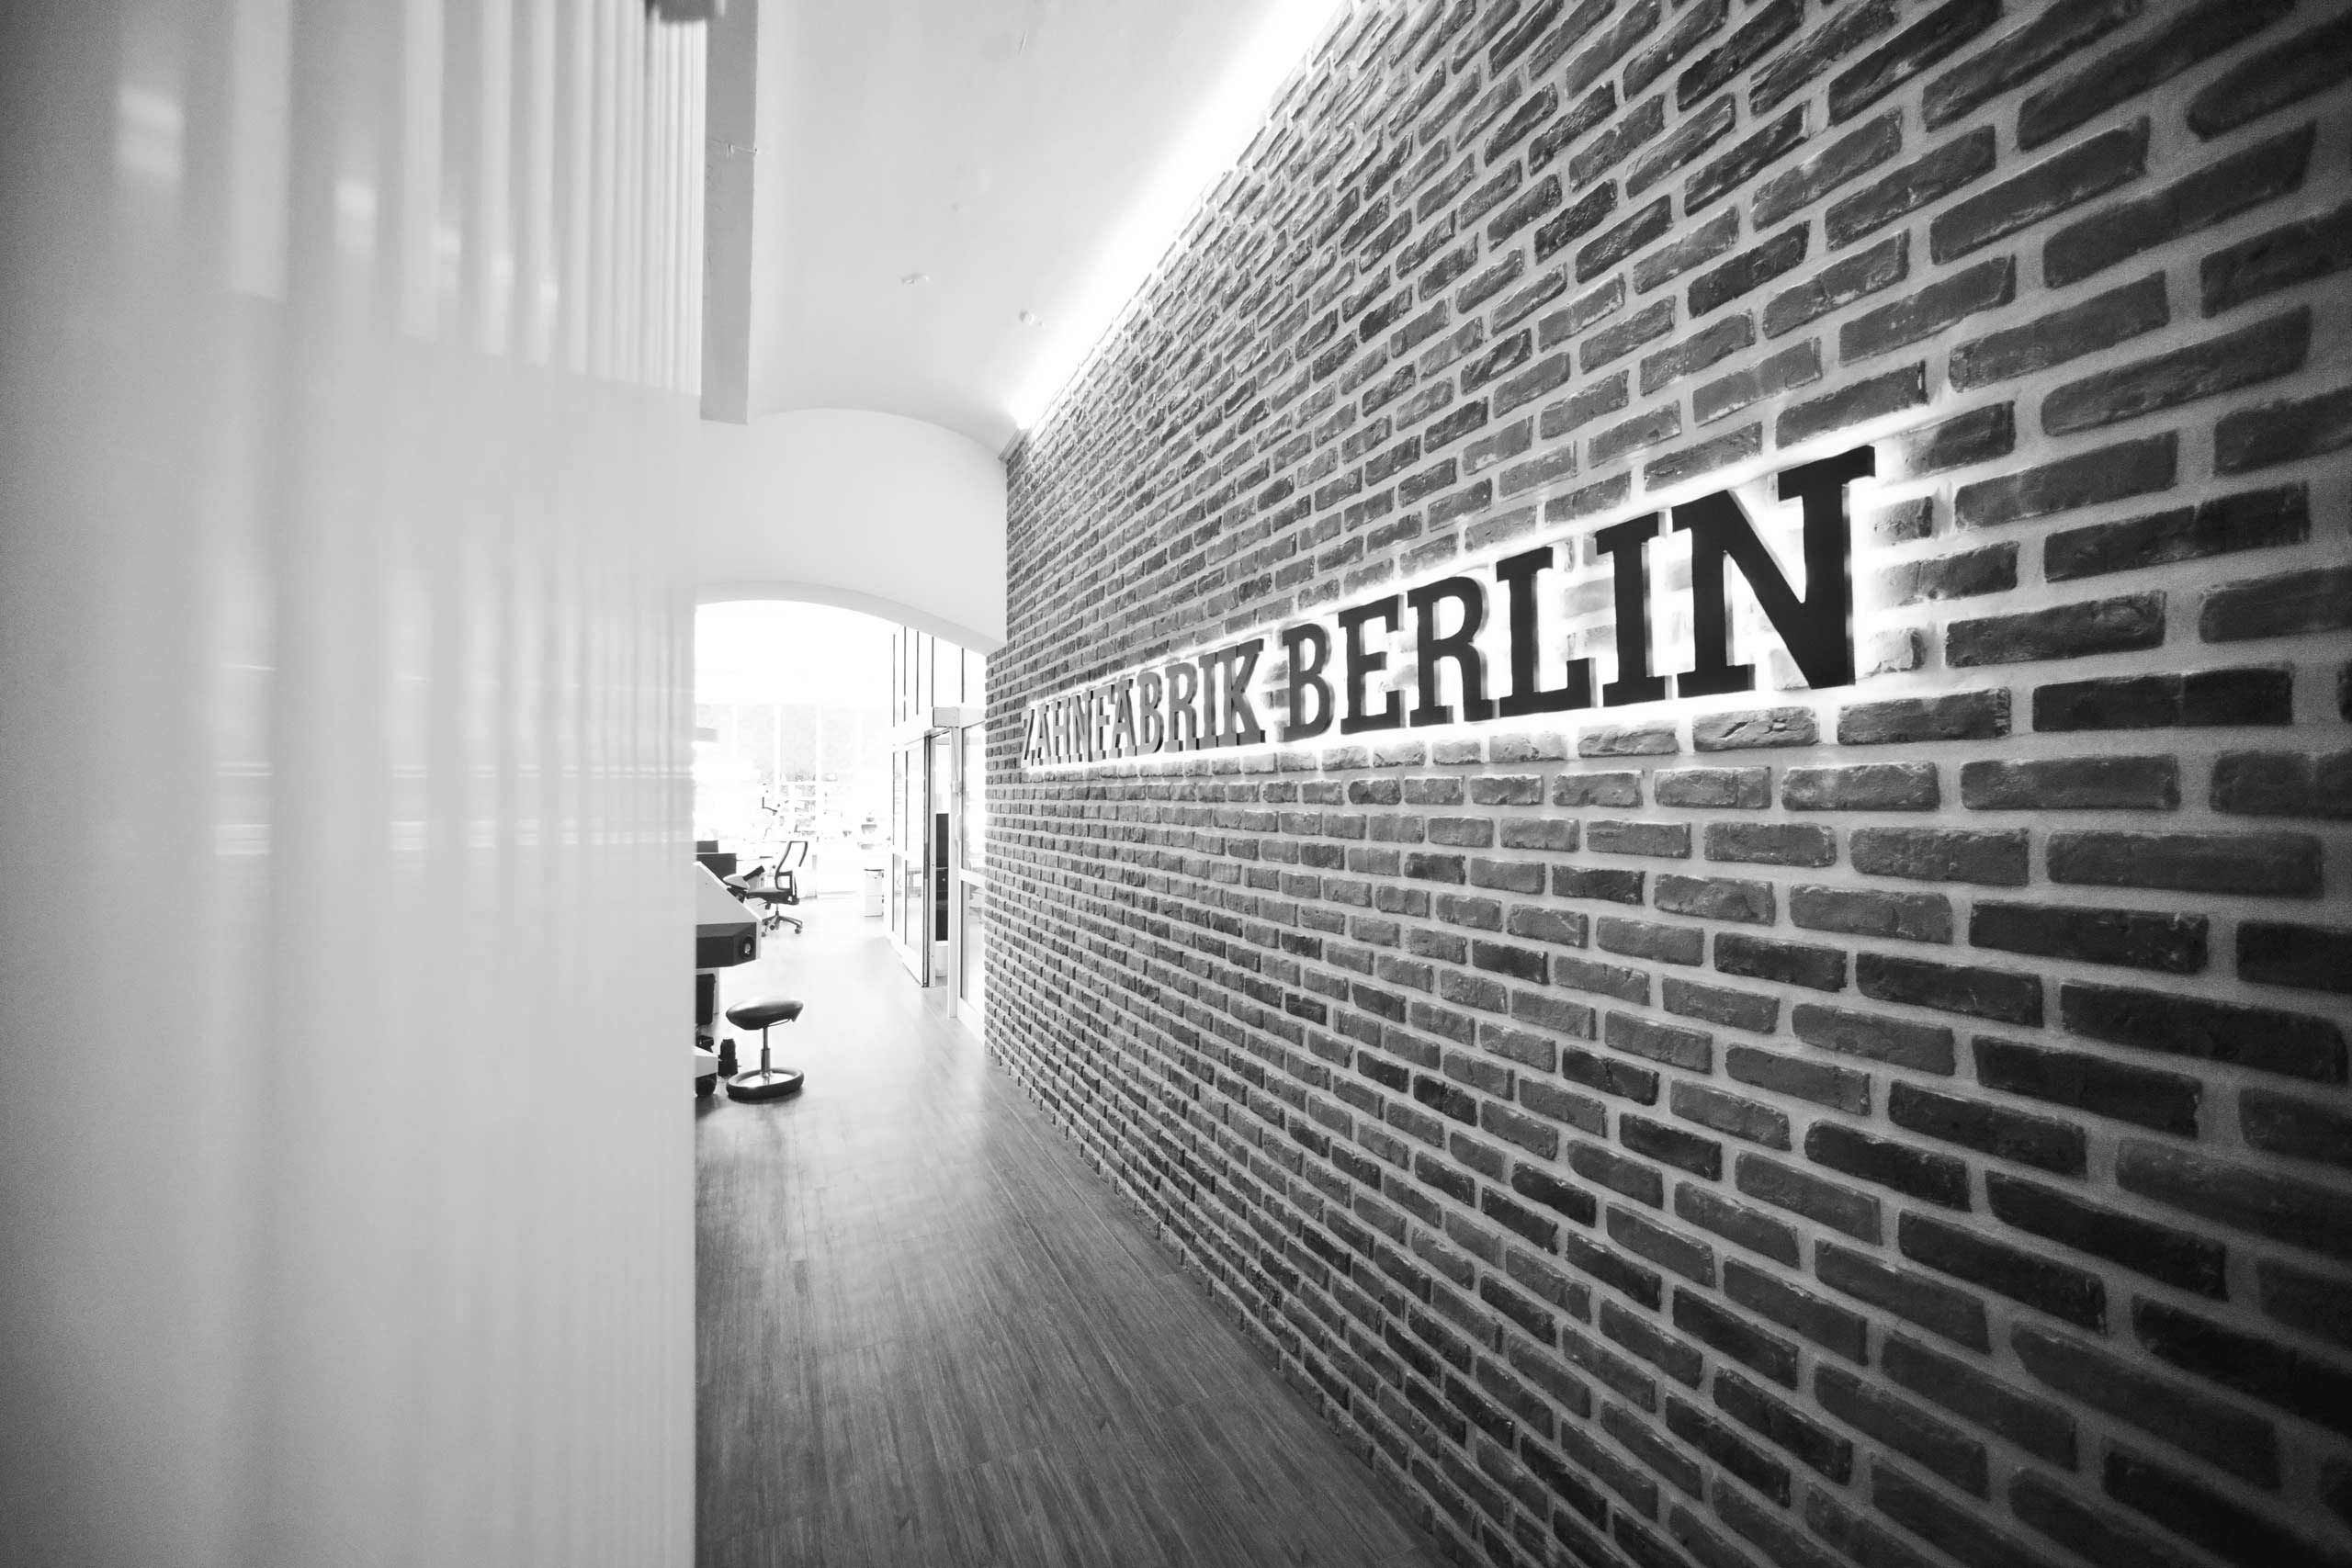 Zahnfabrik Berlin Schriftzug auf einer Ziegelwand